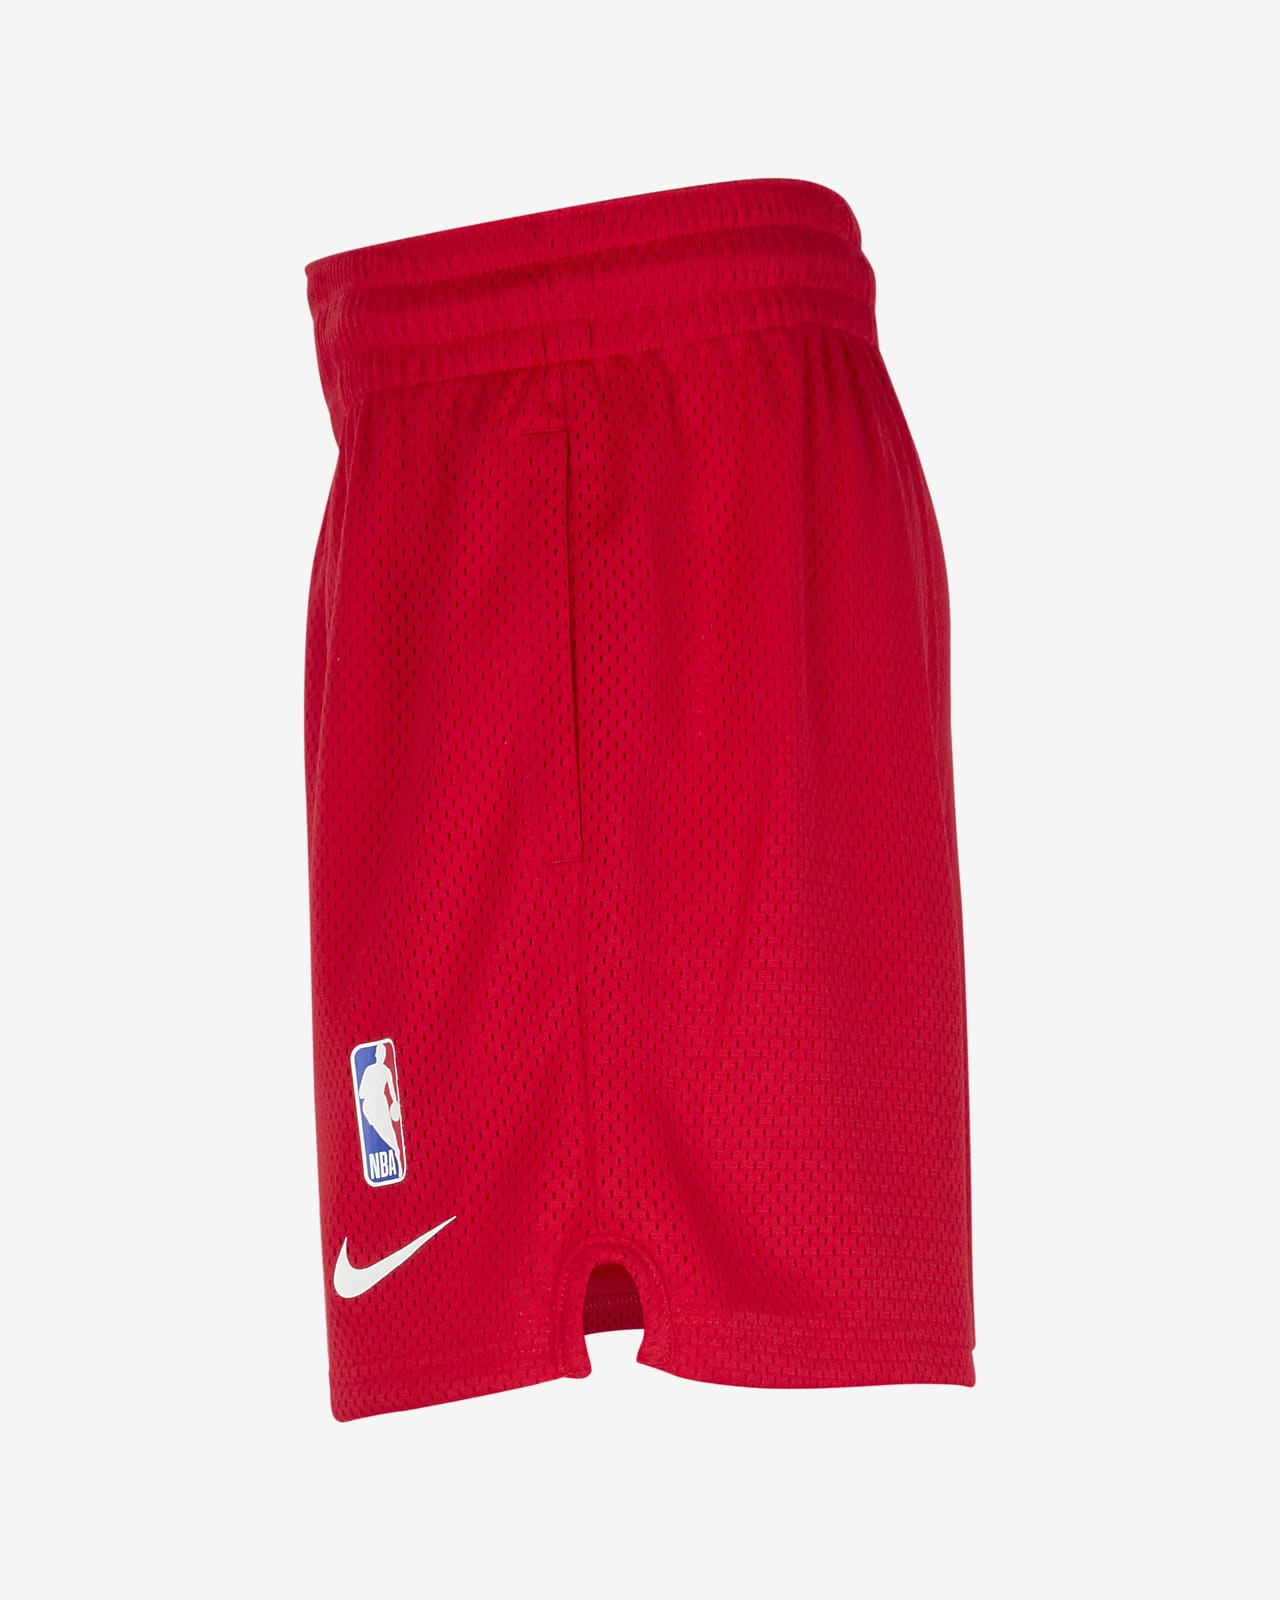 Chicago Bulls Nike Player Short - University Red -Mens